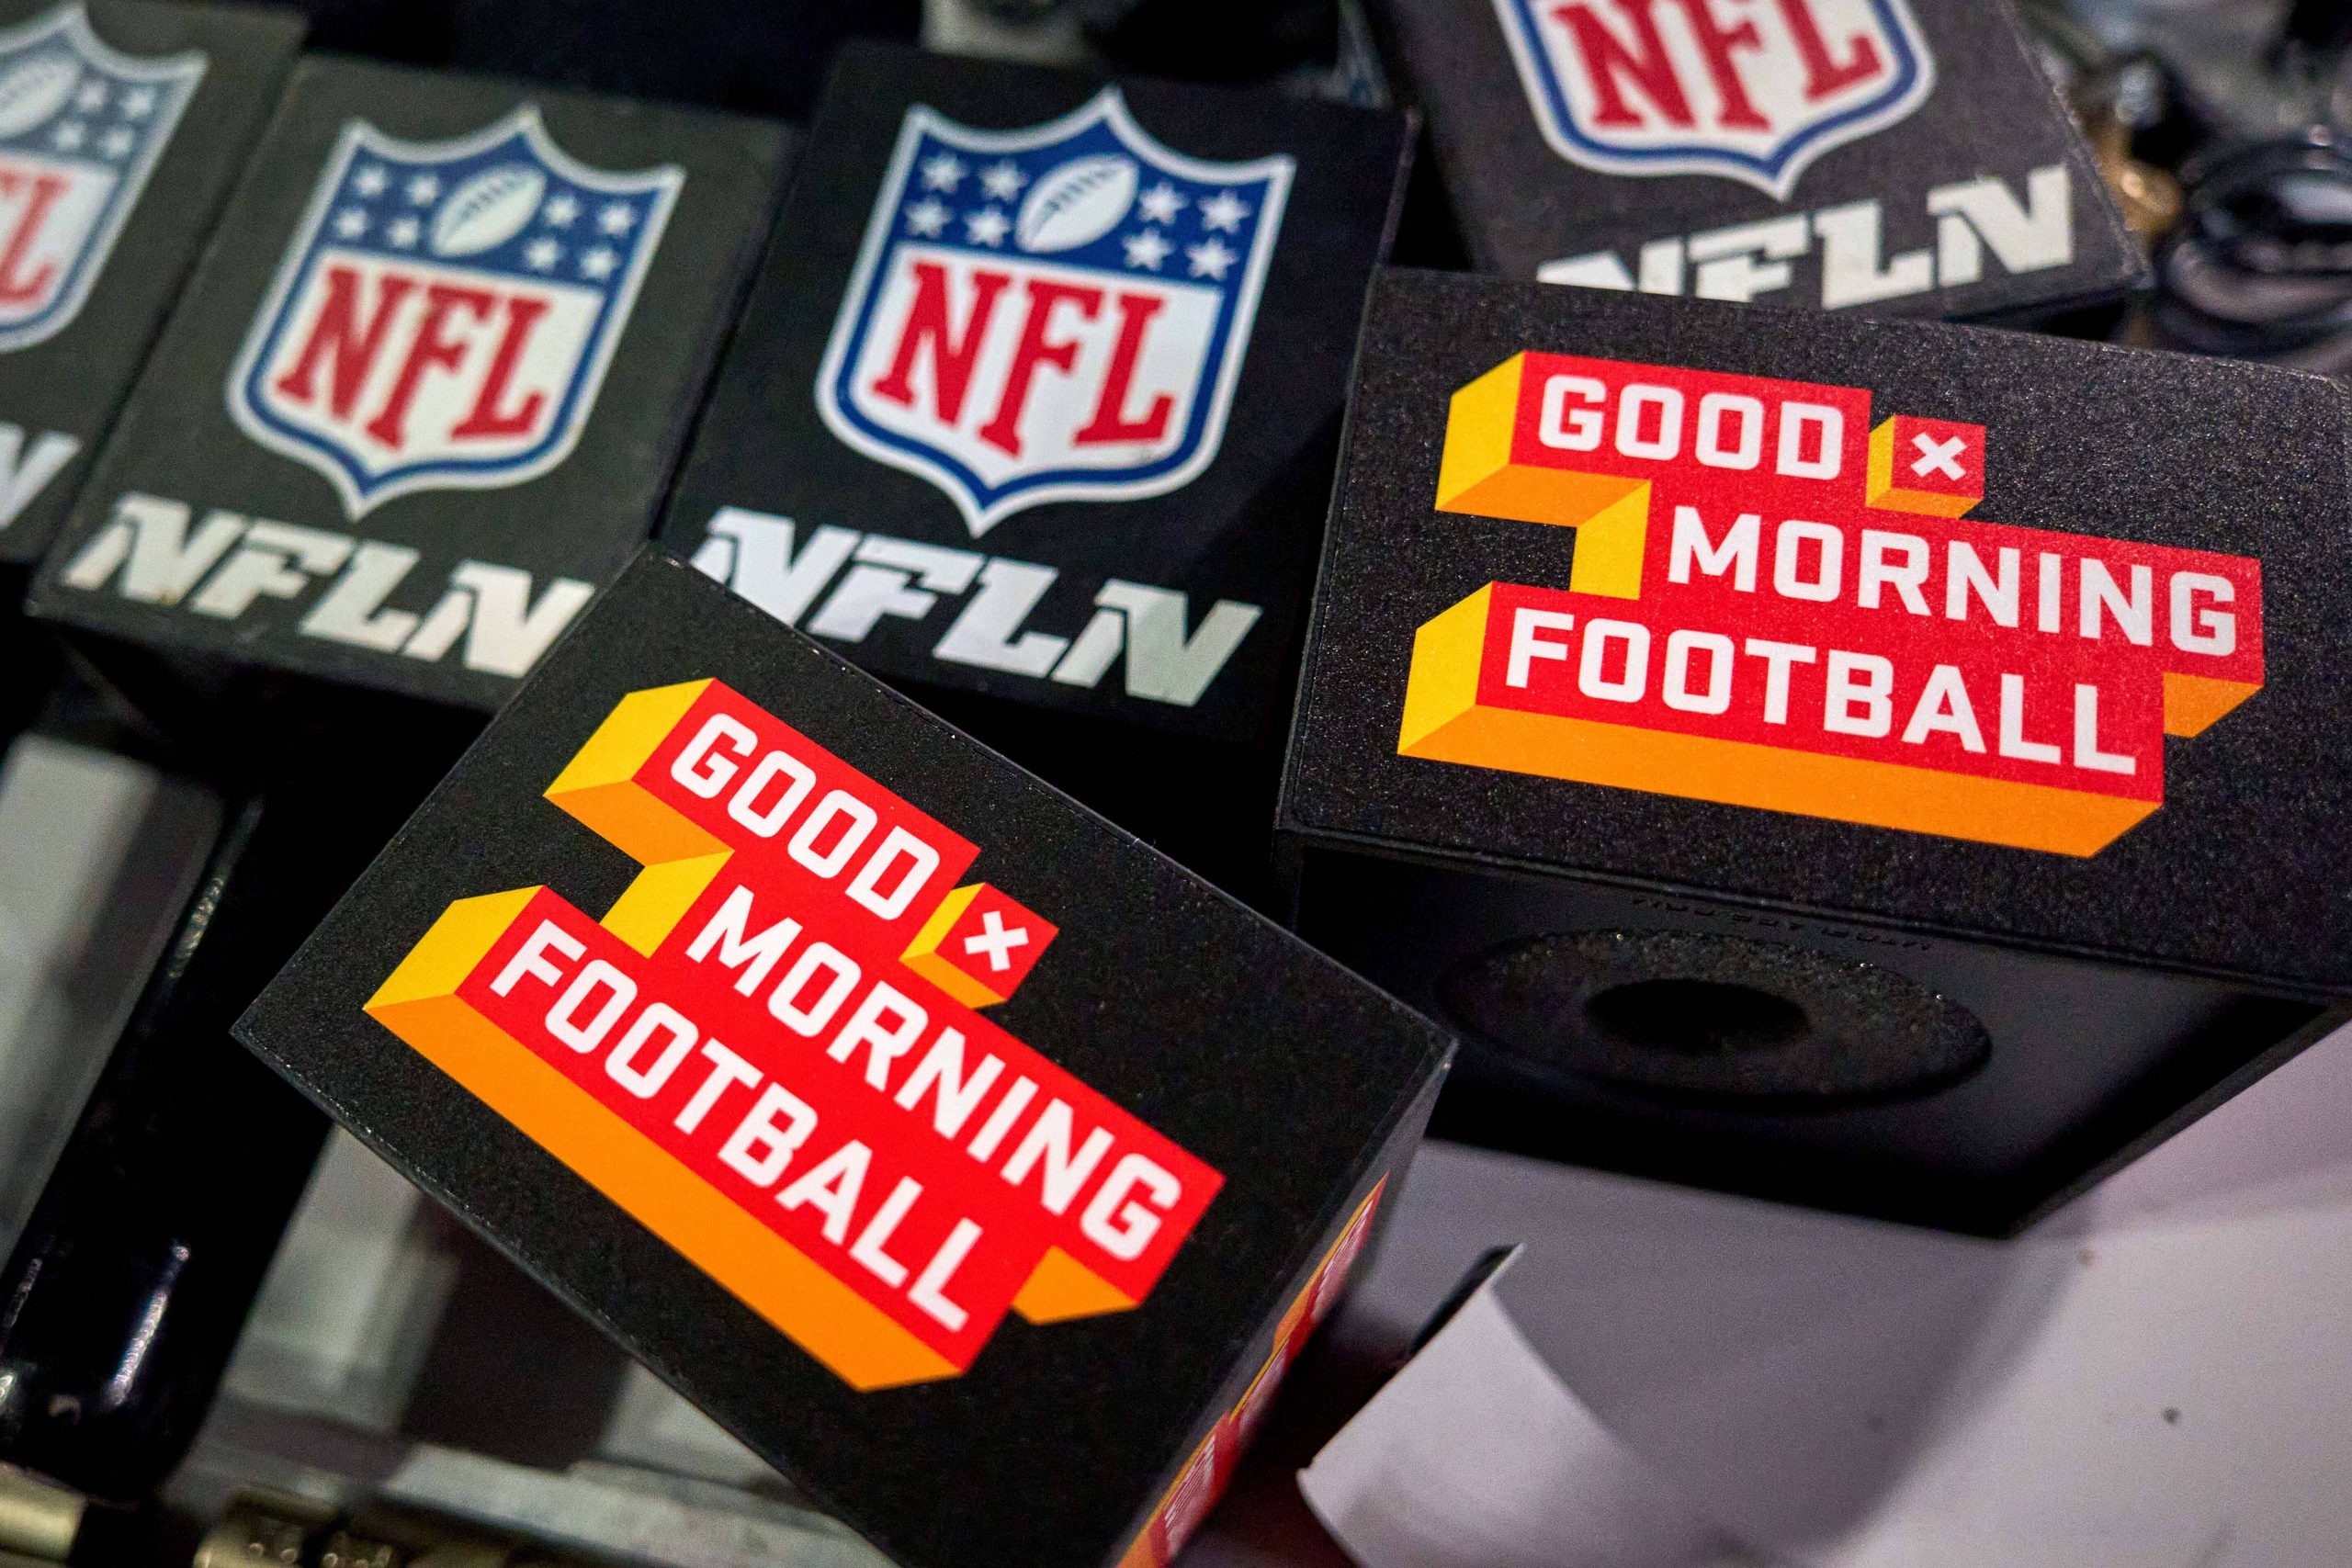 FootballR - NFL - Diese Beschreibung wurde automatisch generiert. NFL-Show Good Morning Football Logos auf einem Tisch.